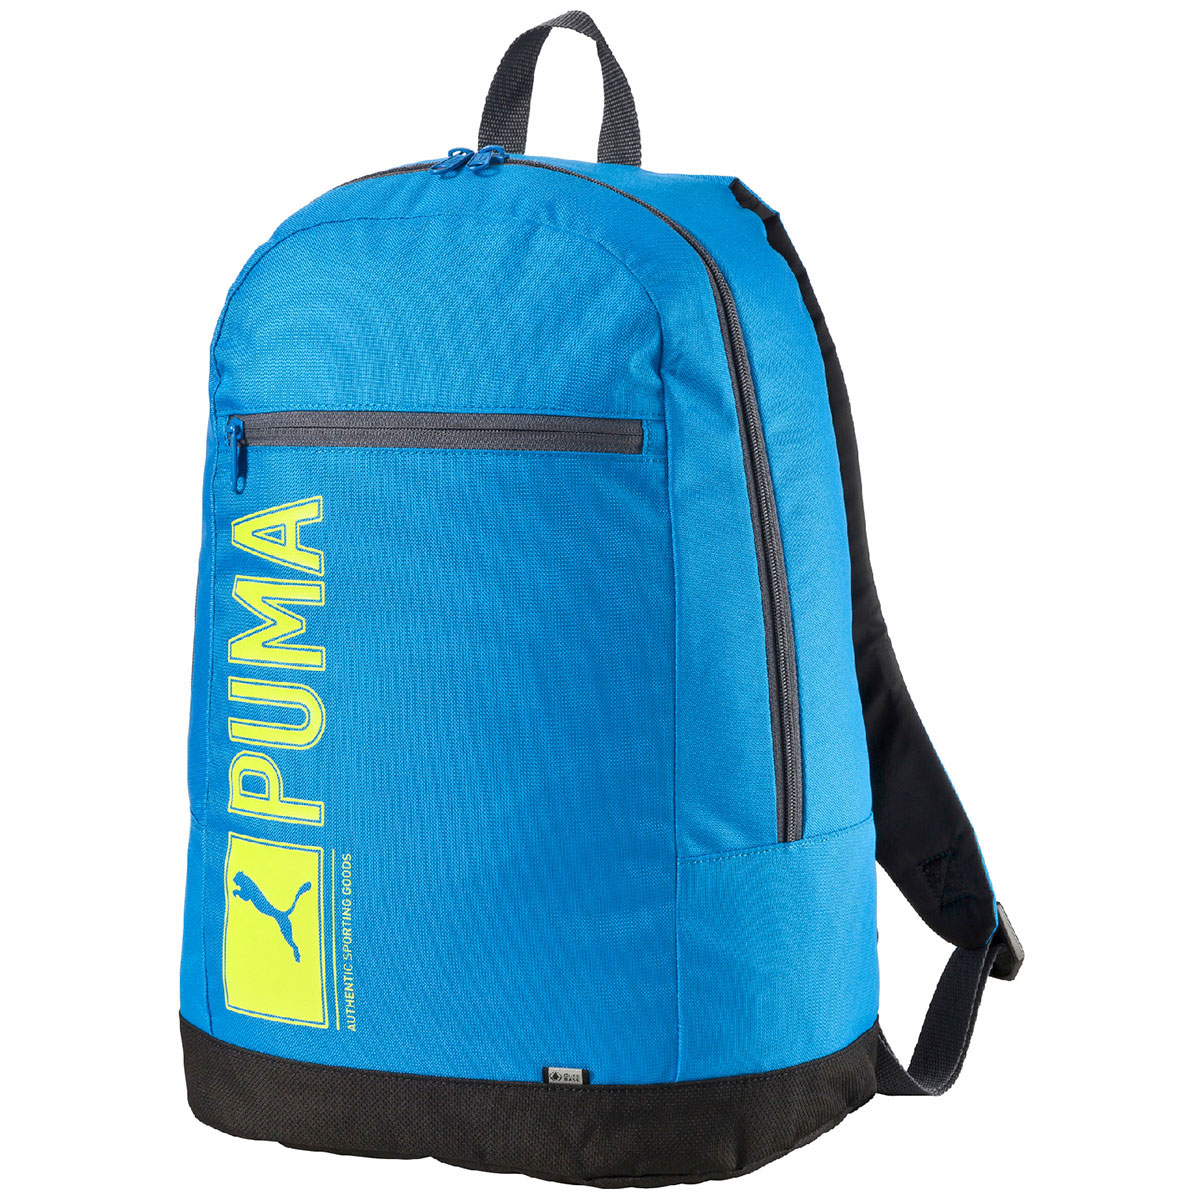 balo puma pioneer backpack màu xanh dương